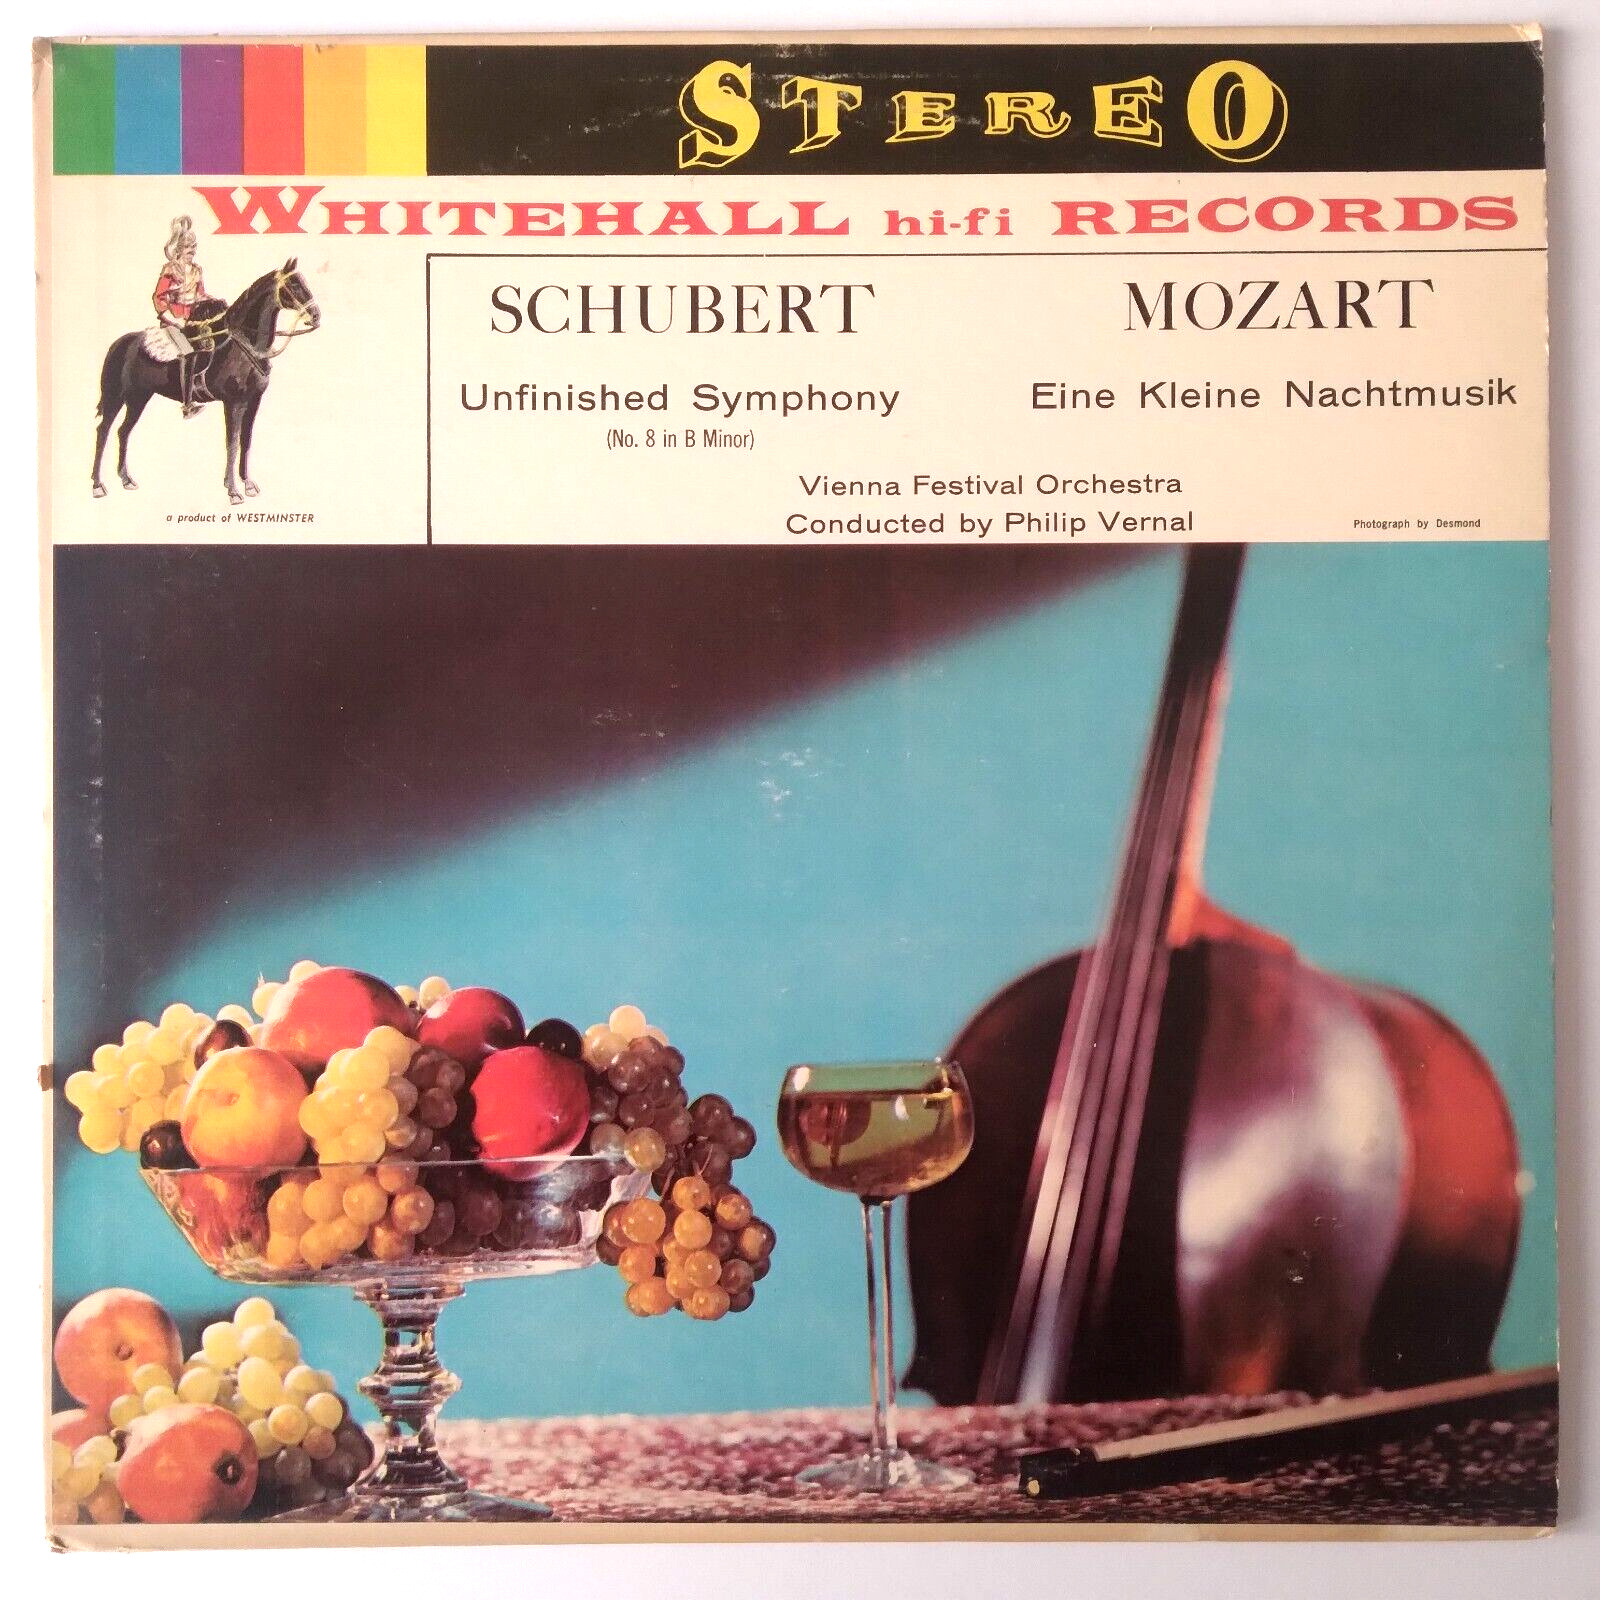 Schubert Mozart Vienna Festival Orchestra Vtg 1959 Vinyl LP Record Album WH40007